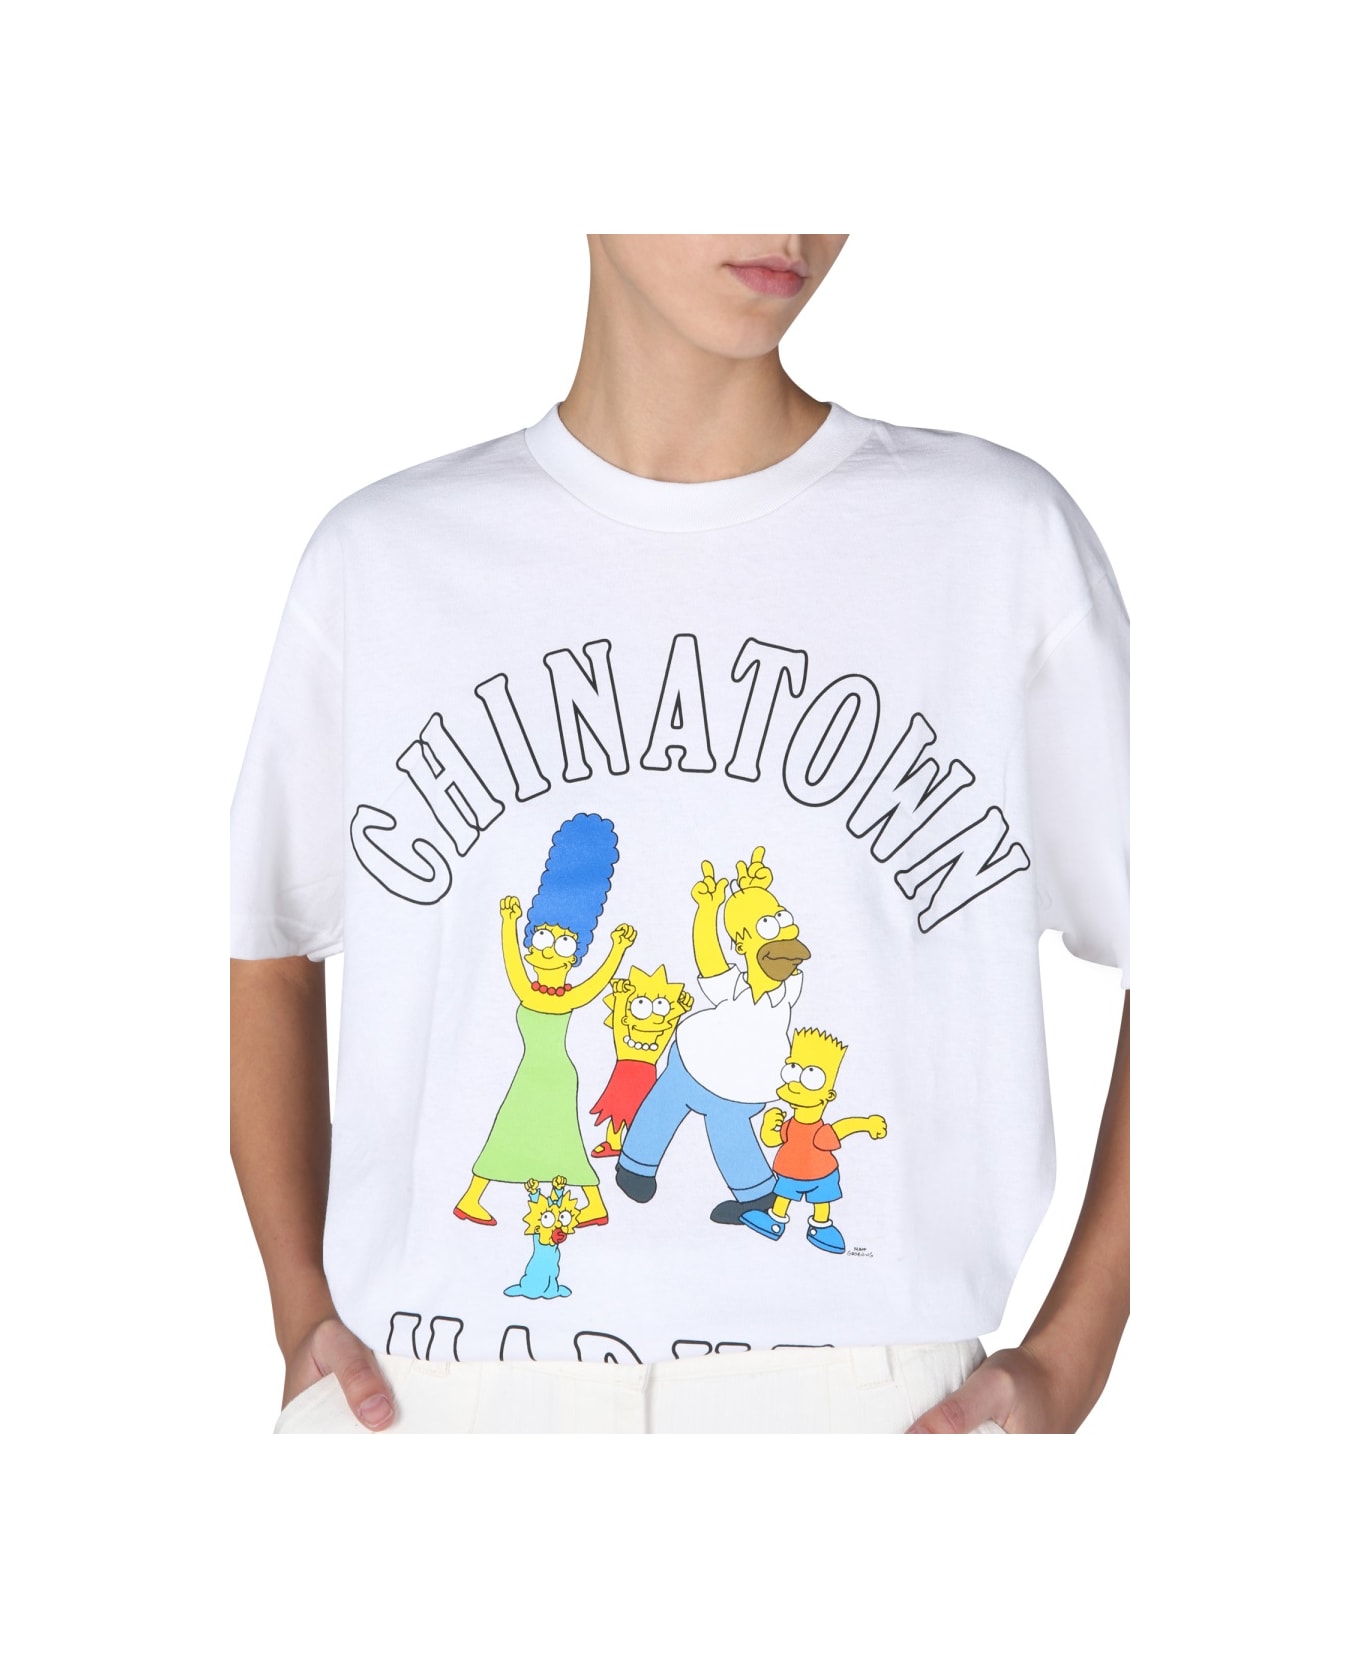 Market "family Simpson" T-shirt - WHITE